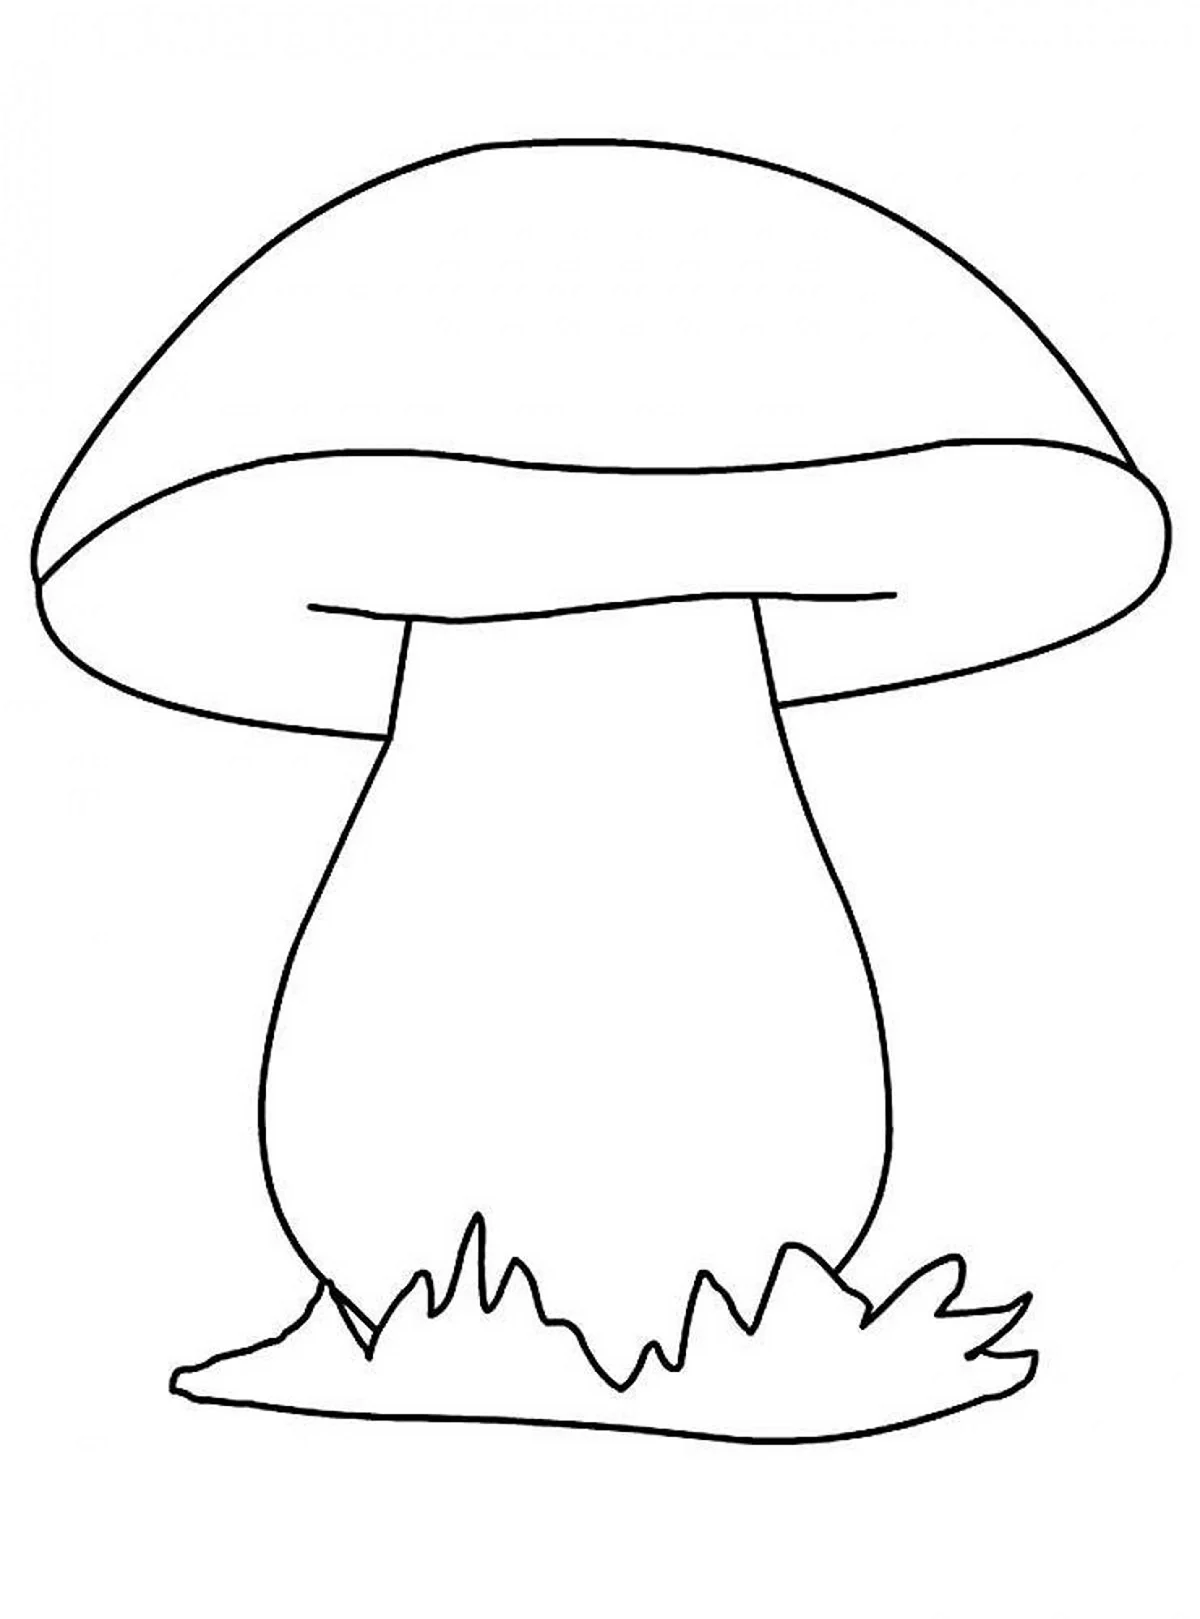 Белый гриб Боровик раскраска. Картинка